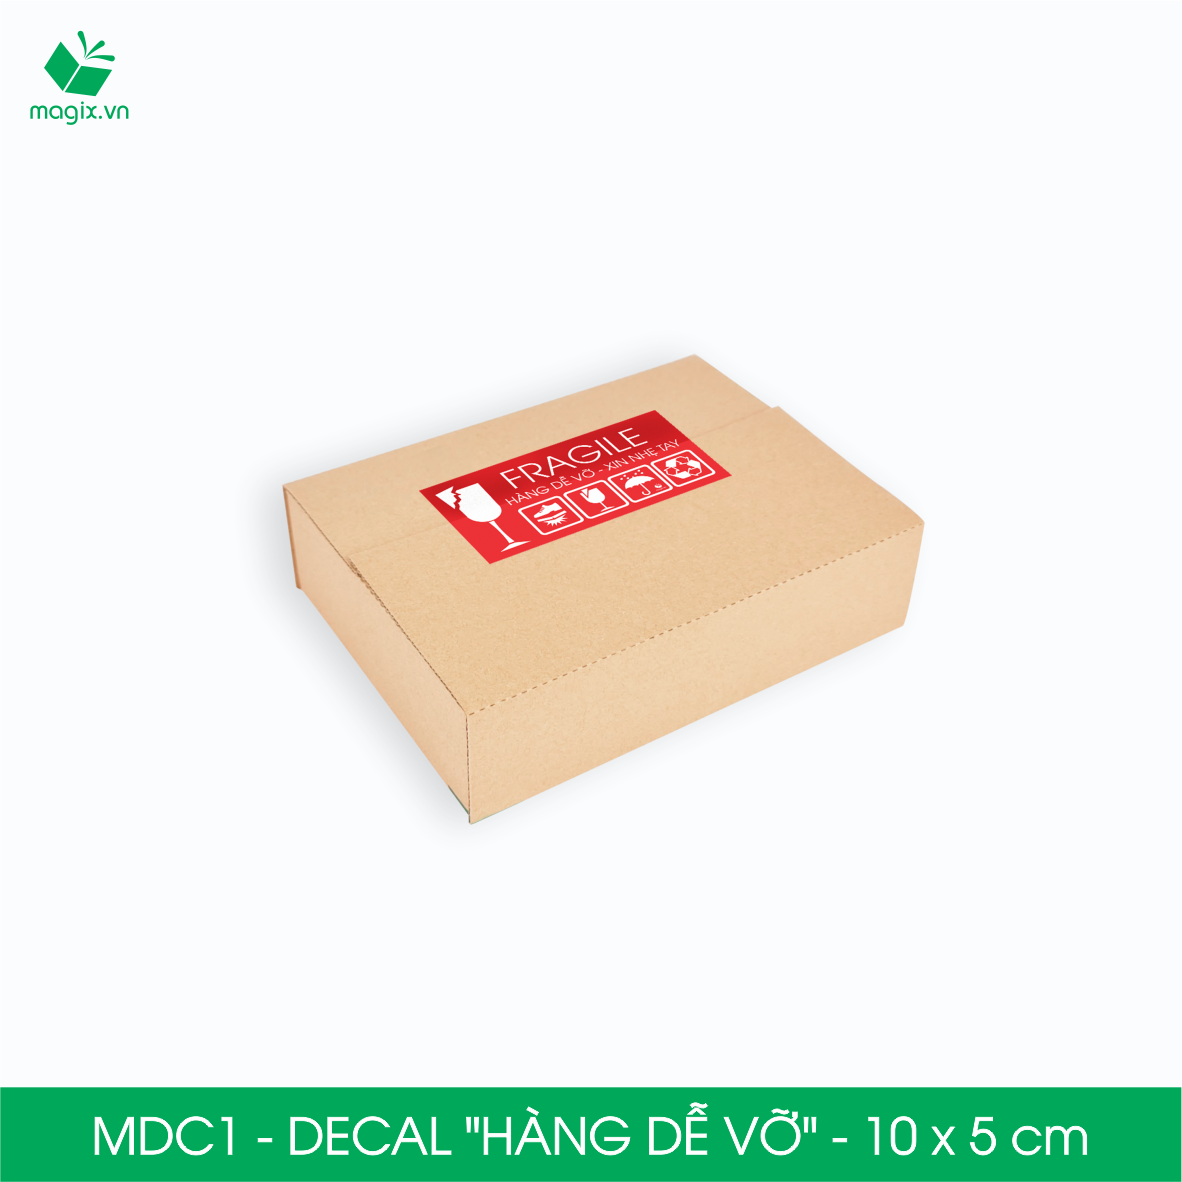 MDC1 - 10x5 cm - 1000 Decal Fragile - Tem dán HÀNG DỄ VỠ - Sticker Nhãn dán có keo